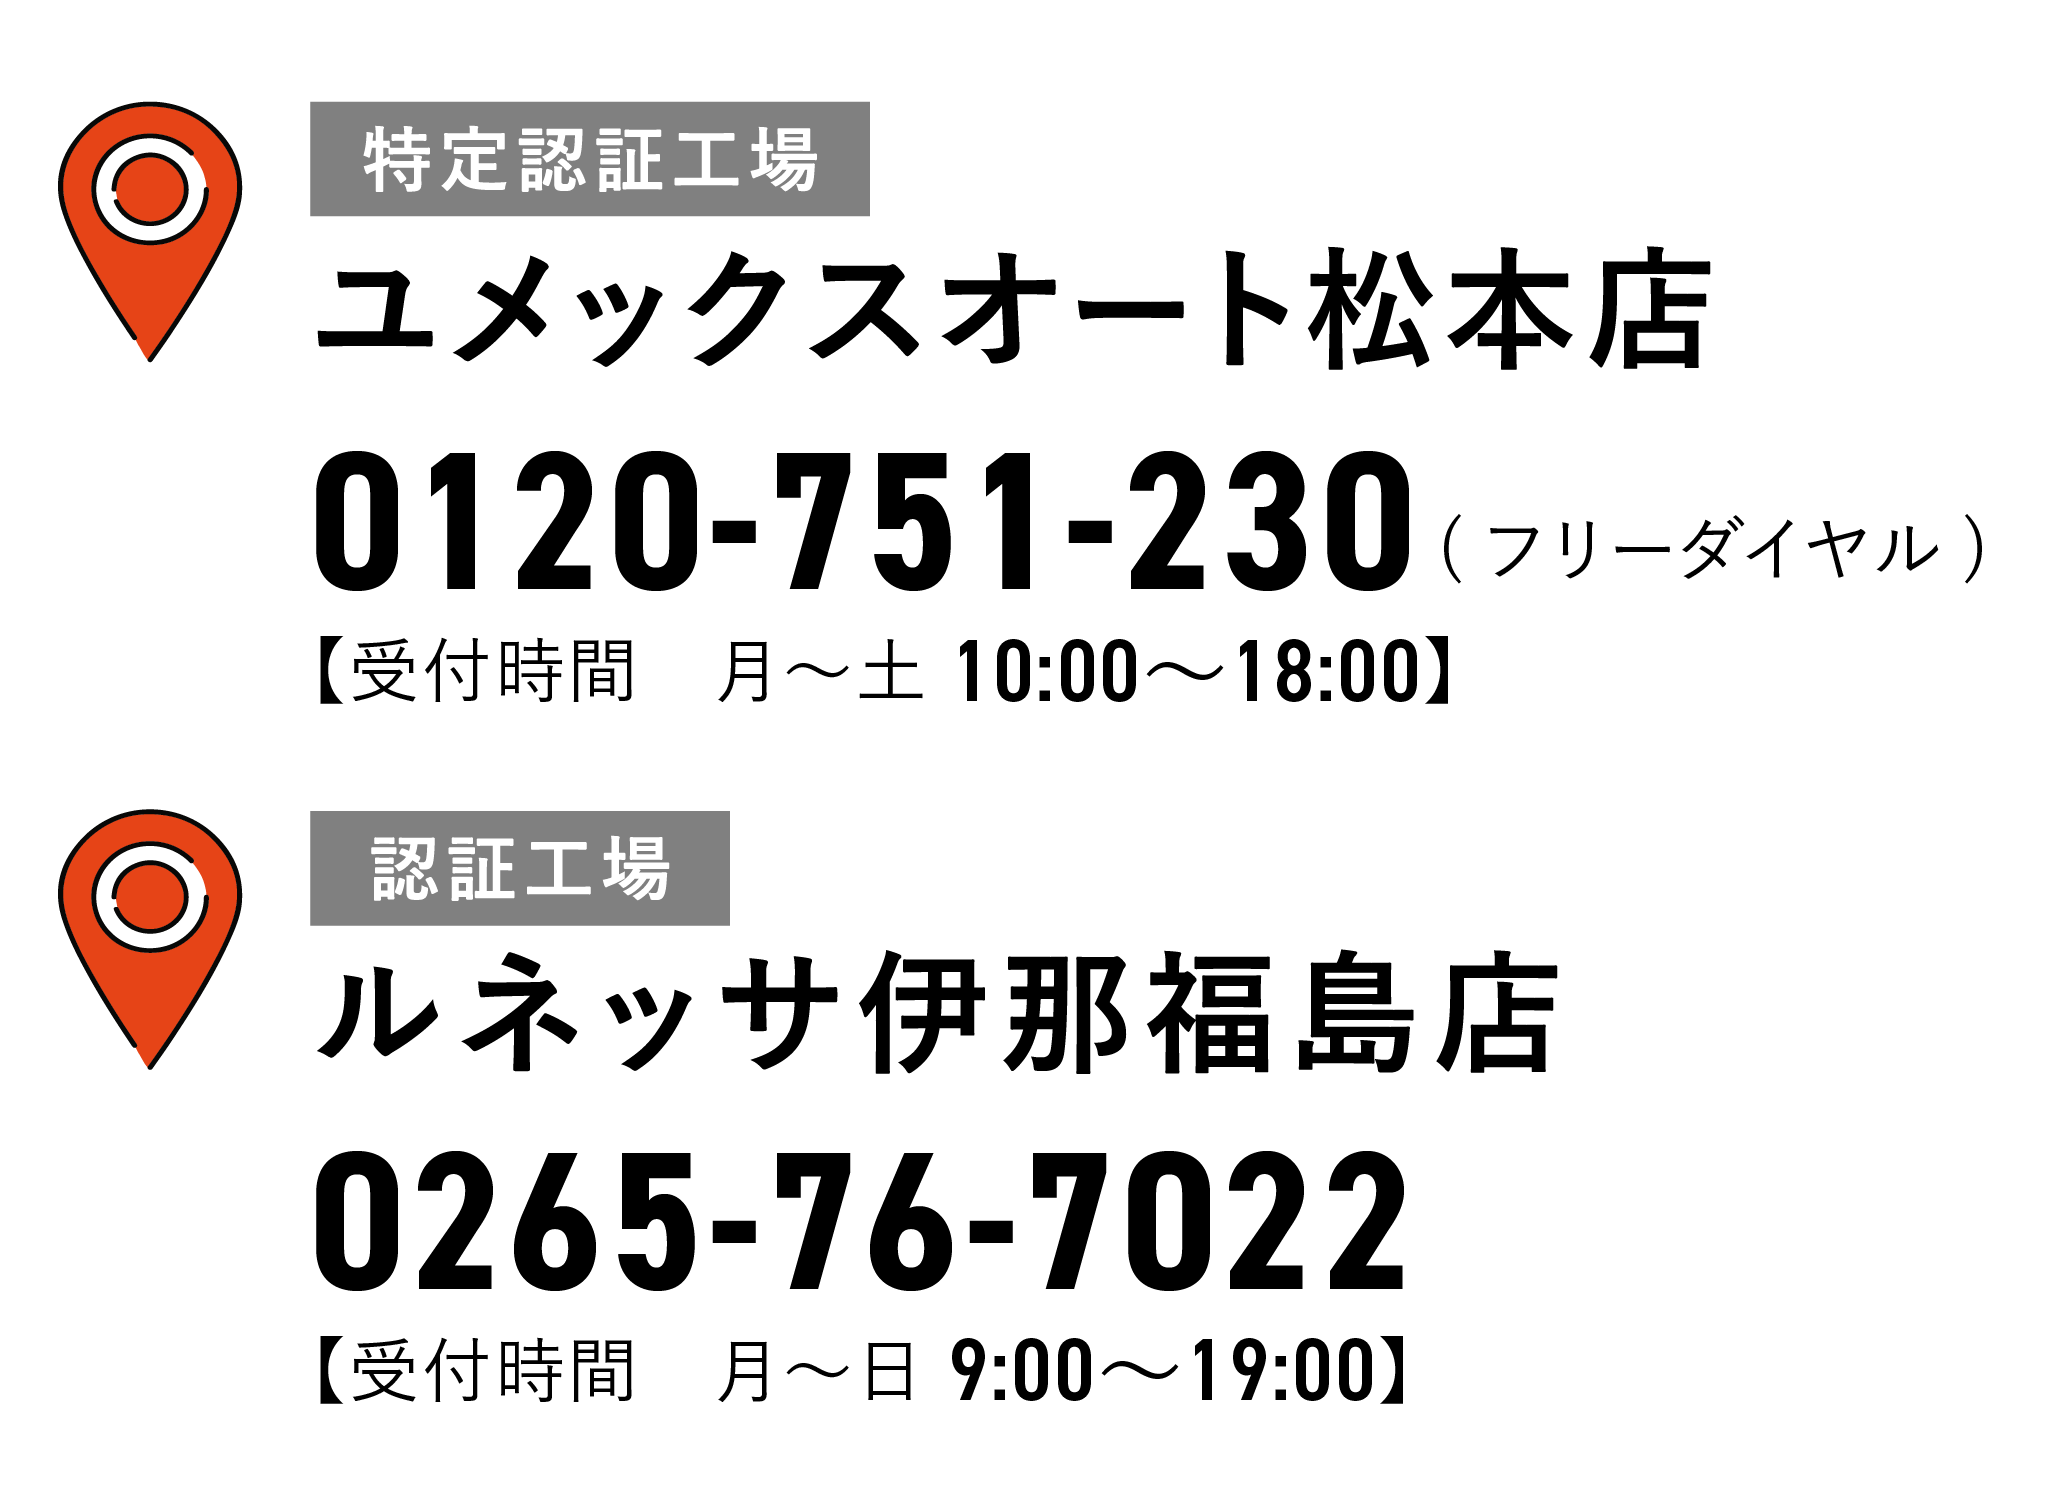 ユメックスオート松本店、ルネッサ伊那福島店電話番号